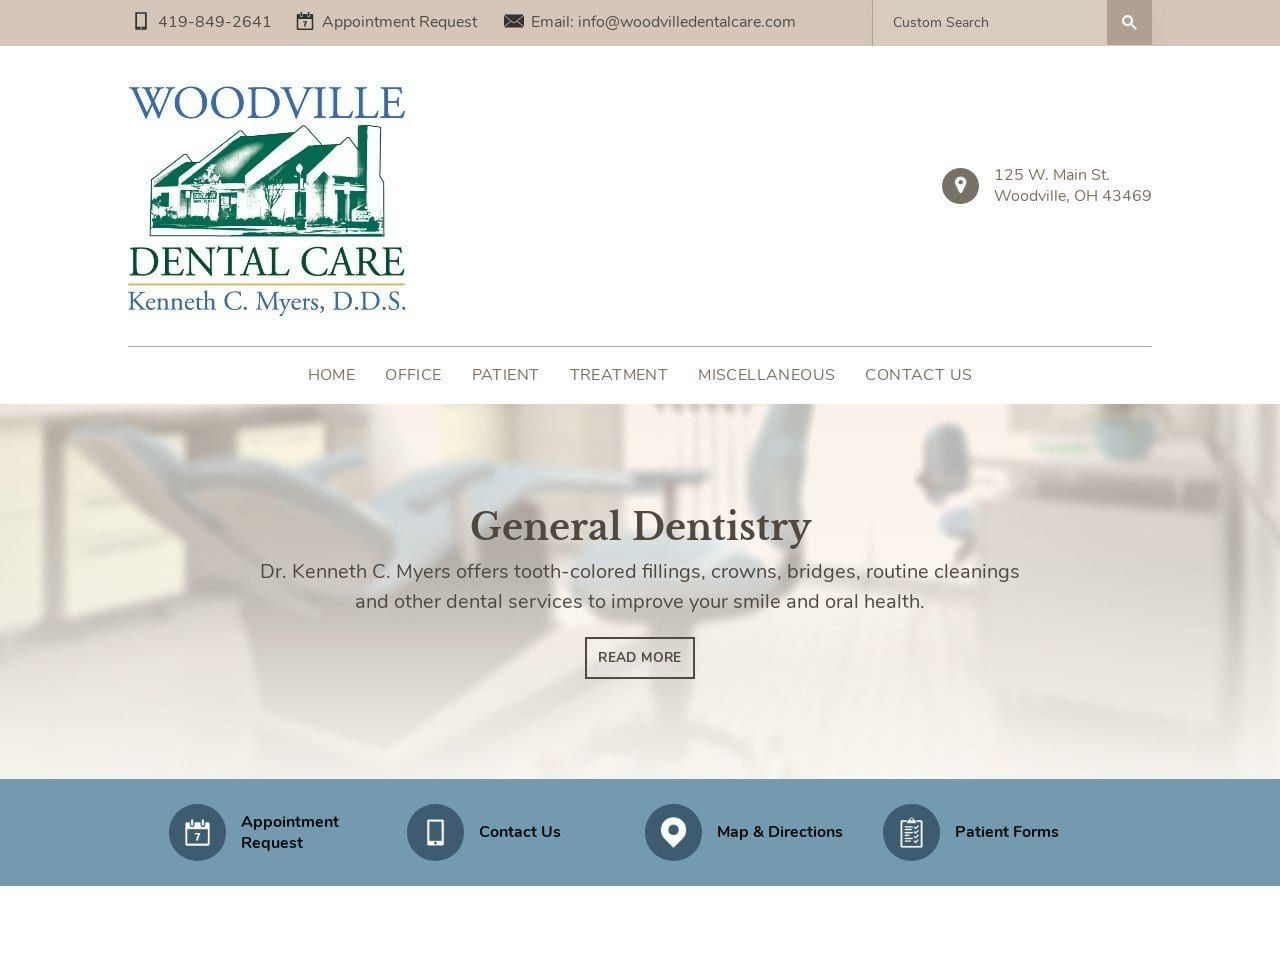 Dr. Kenneth C. Myers DDS Website Screenshot from woodvilledentalcare.com